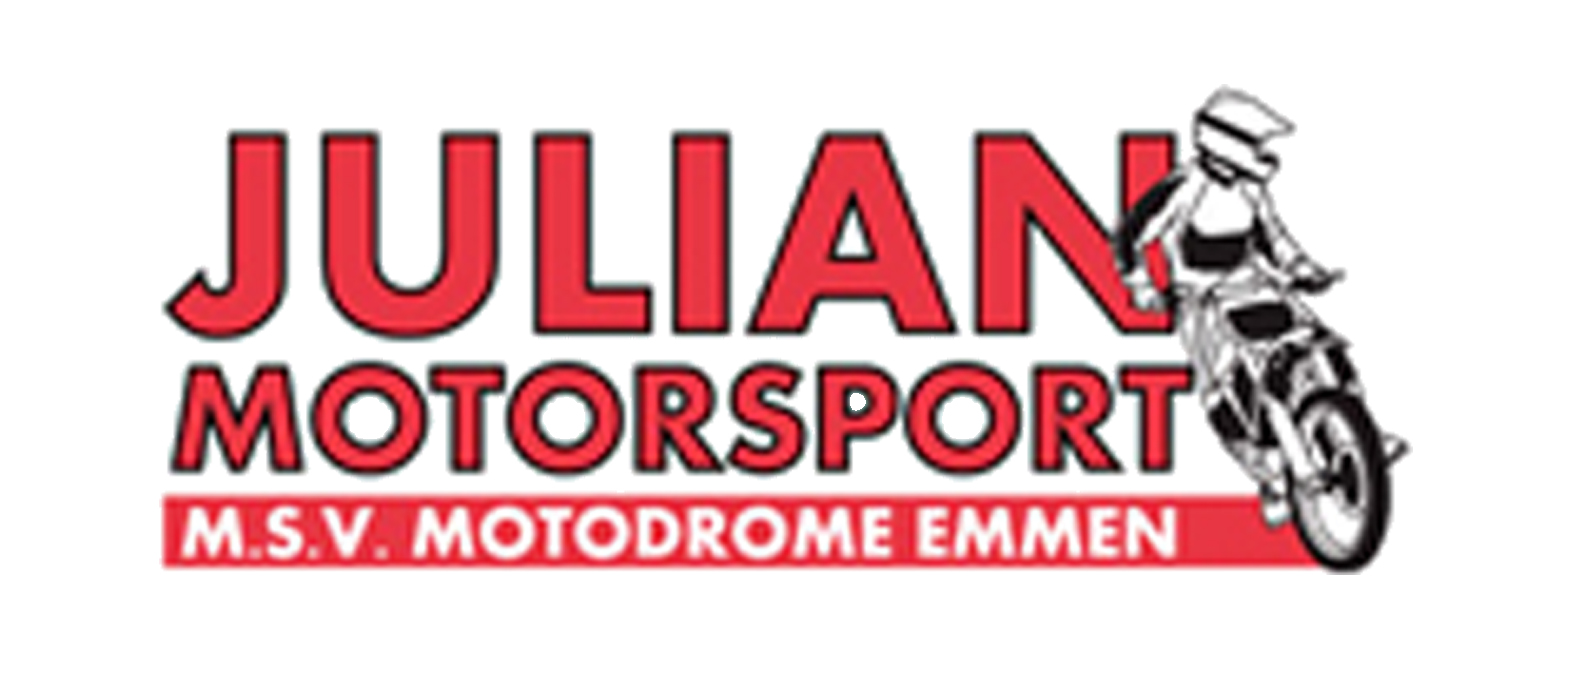 Julian Motorsport